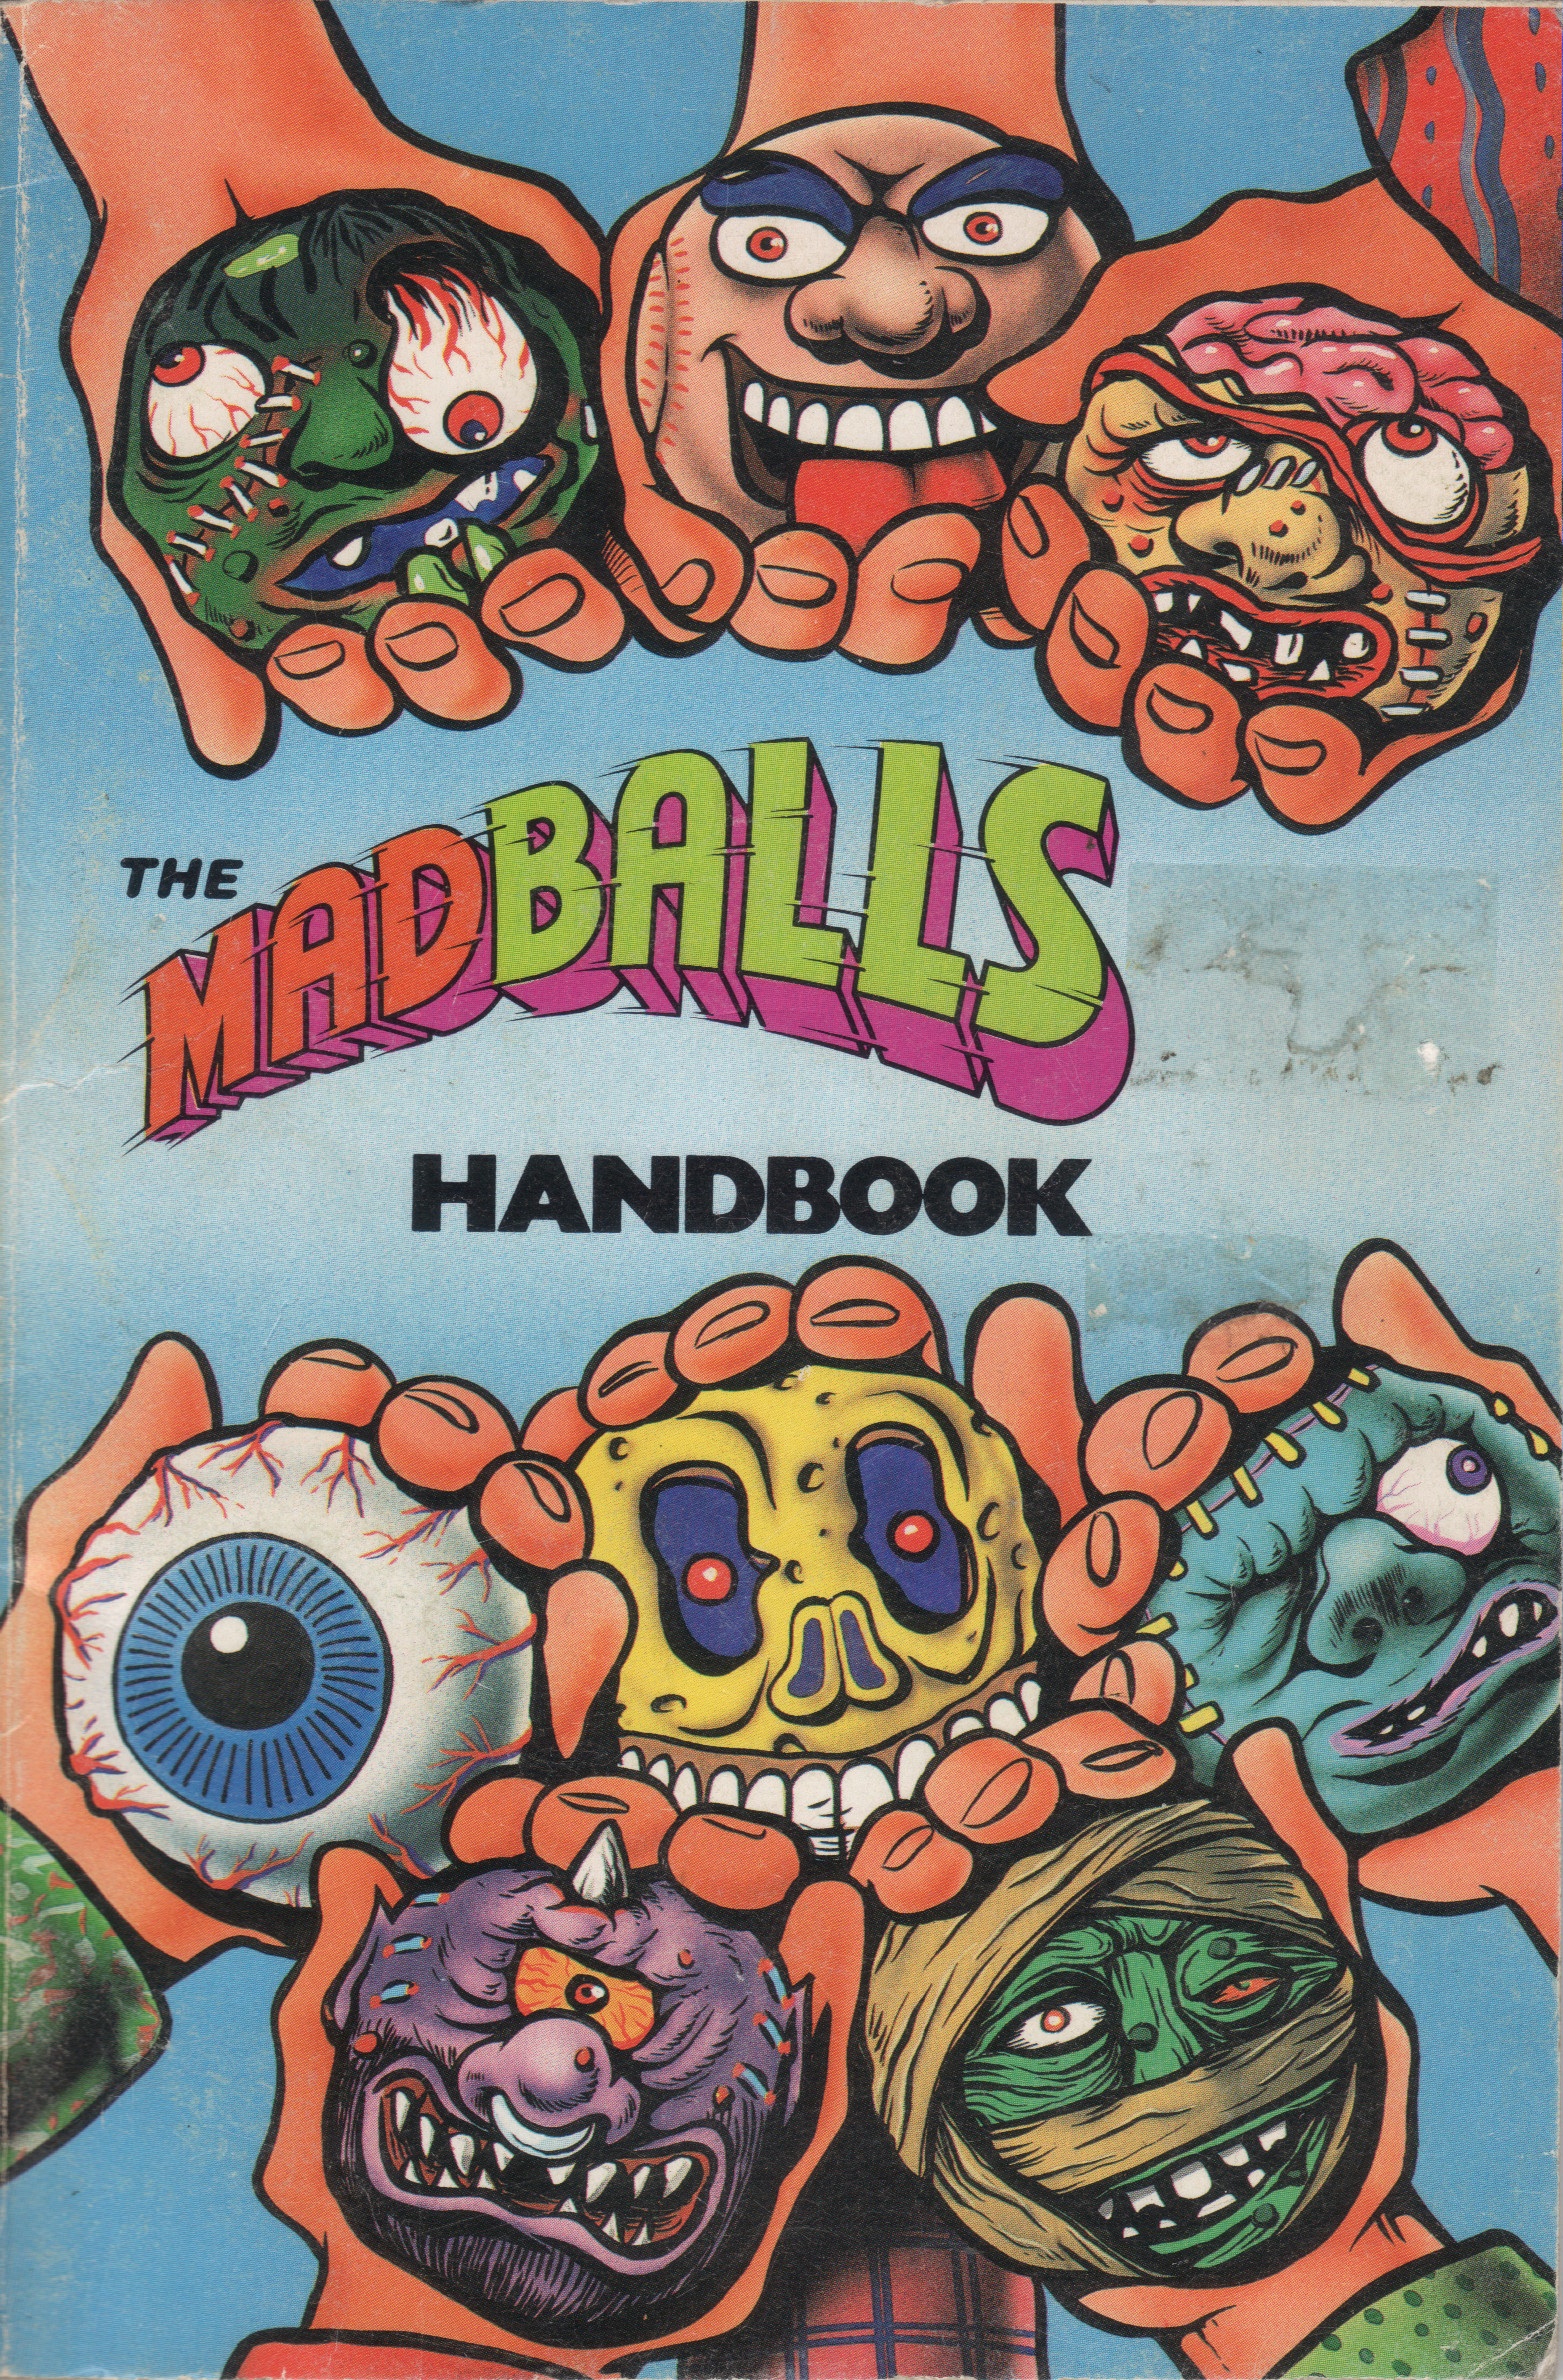 monster-brains-madballs-handbook-1986